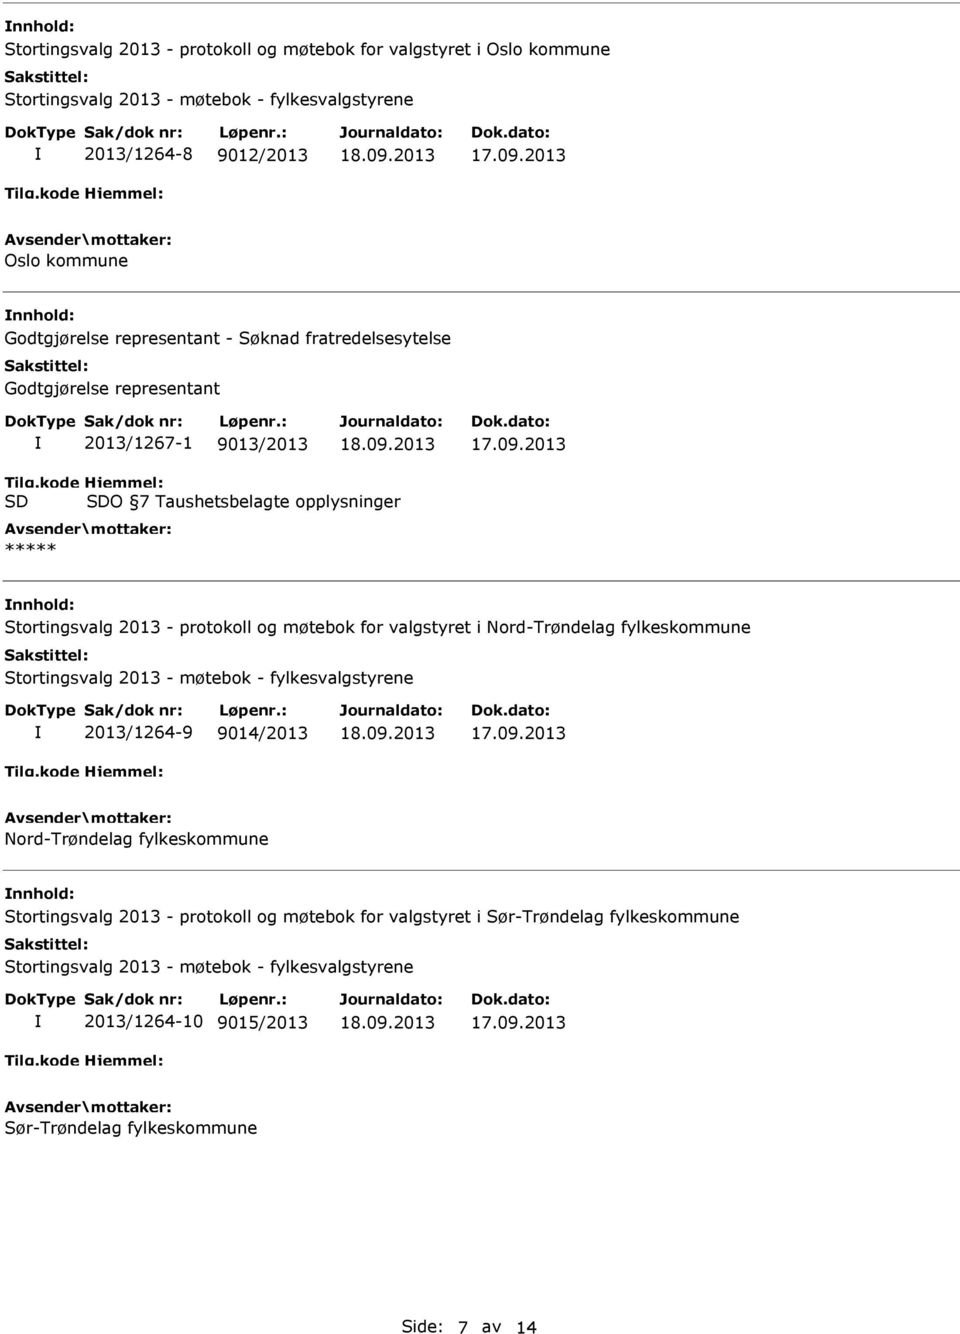 kode SD Hjemmel: SDO 7 Taushetsbelagte opplysninger ***** Stortingsvalg 2013 - protokoll og møtebok for valgstyret i Nord-Trøndelag